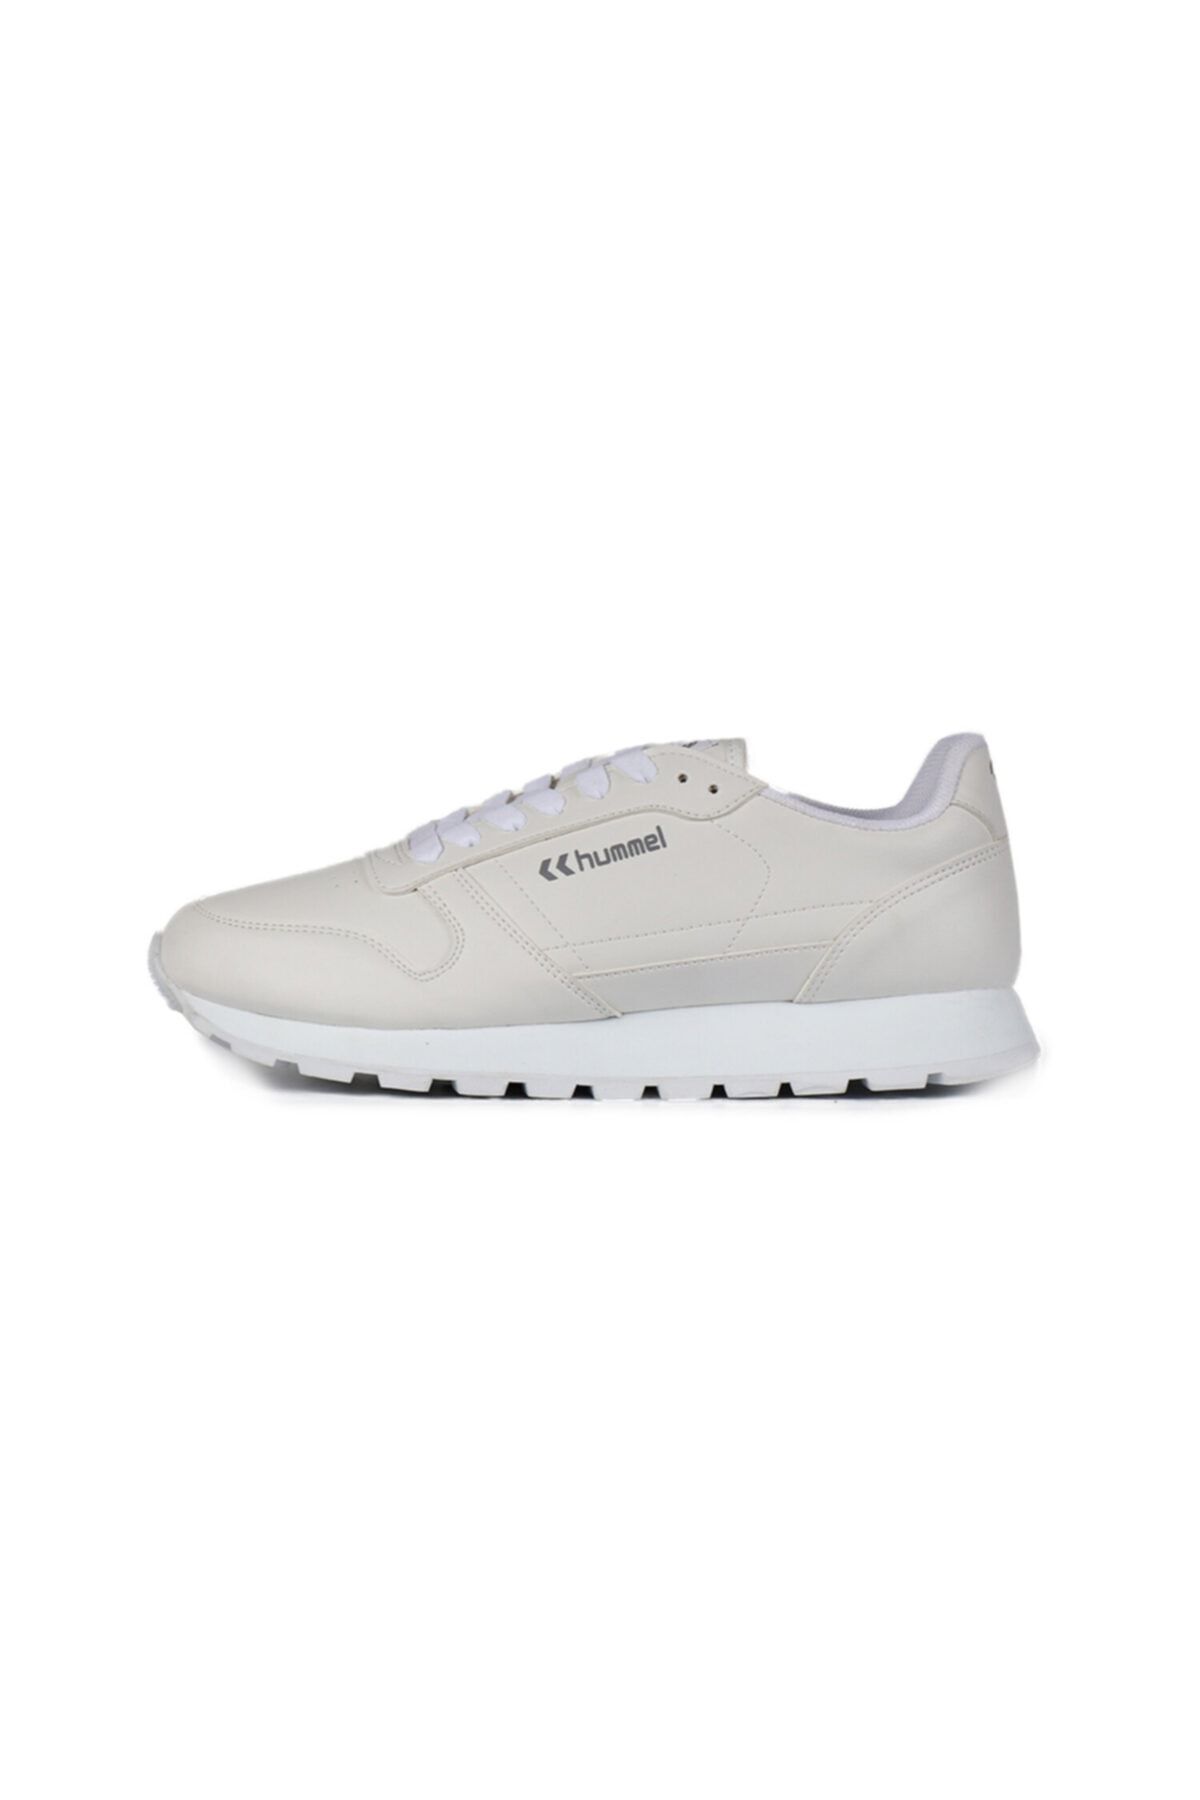 hummel STREET Beyaz Kadın Sneaker Ayakkabı 100351991